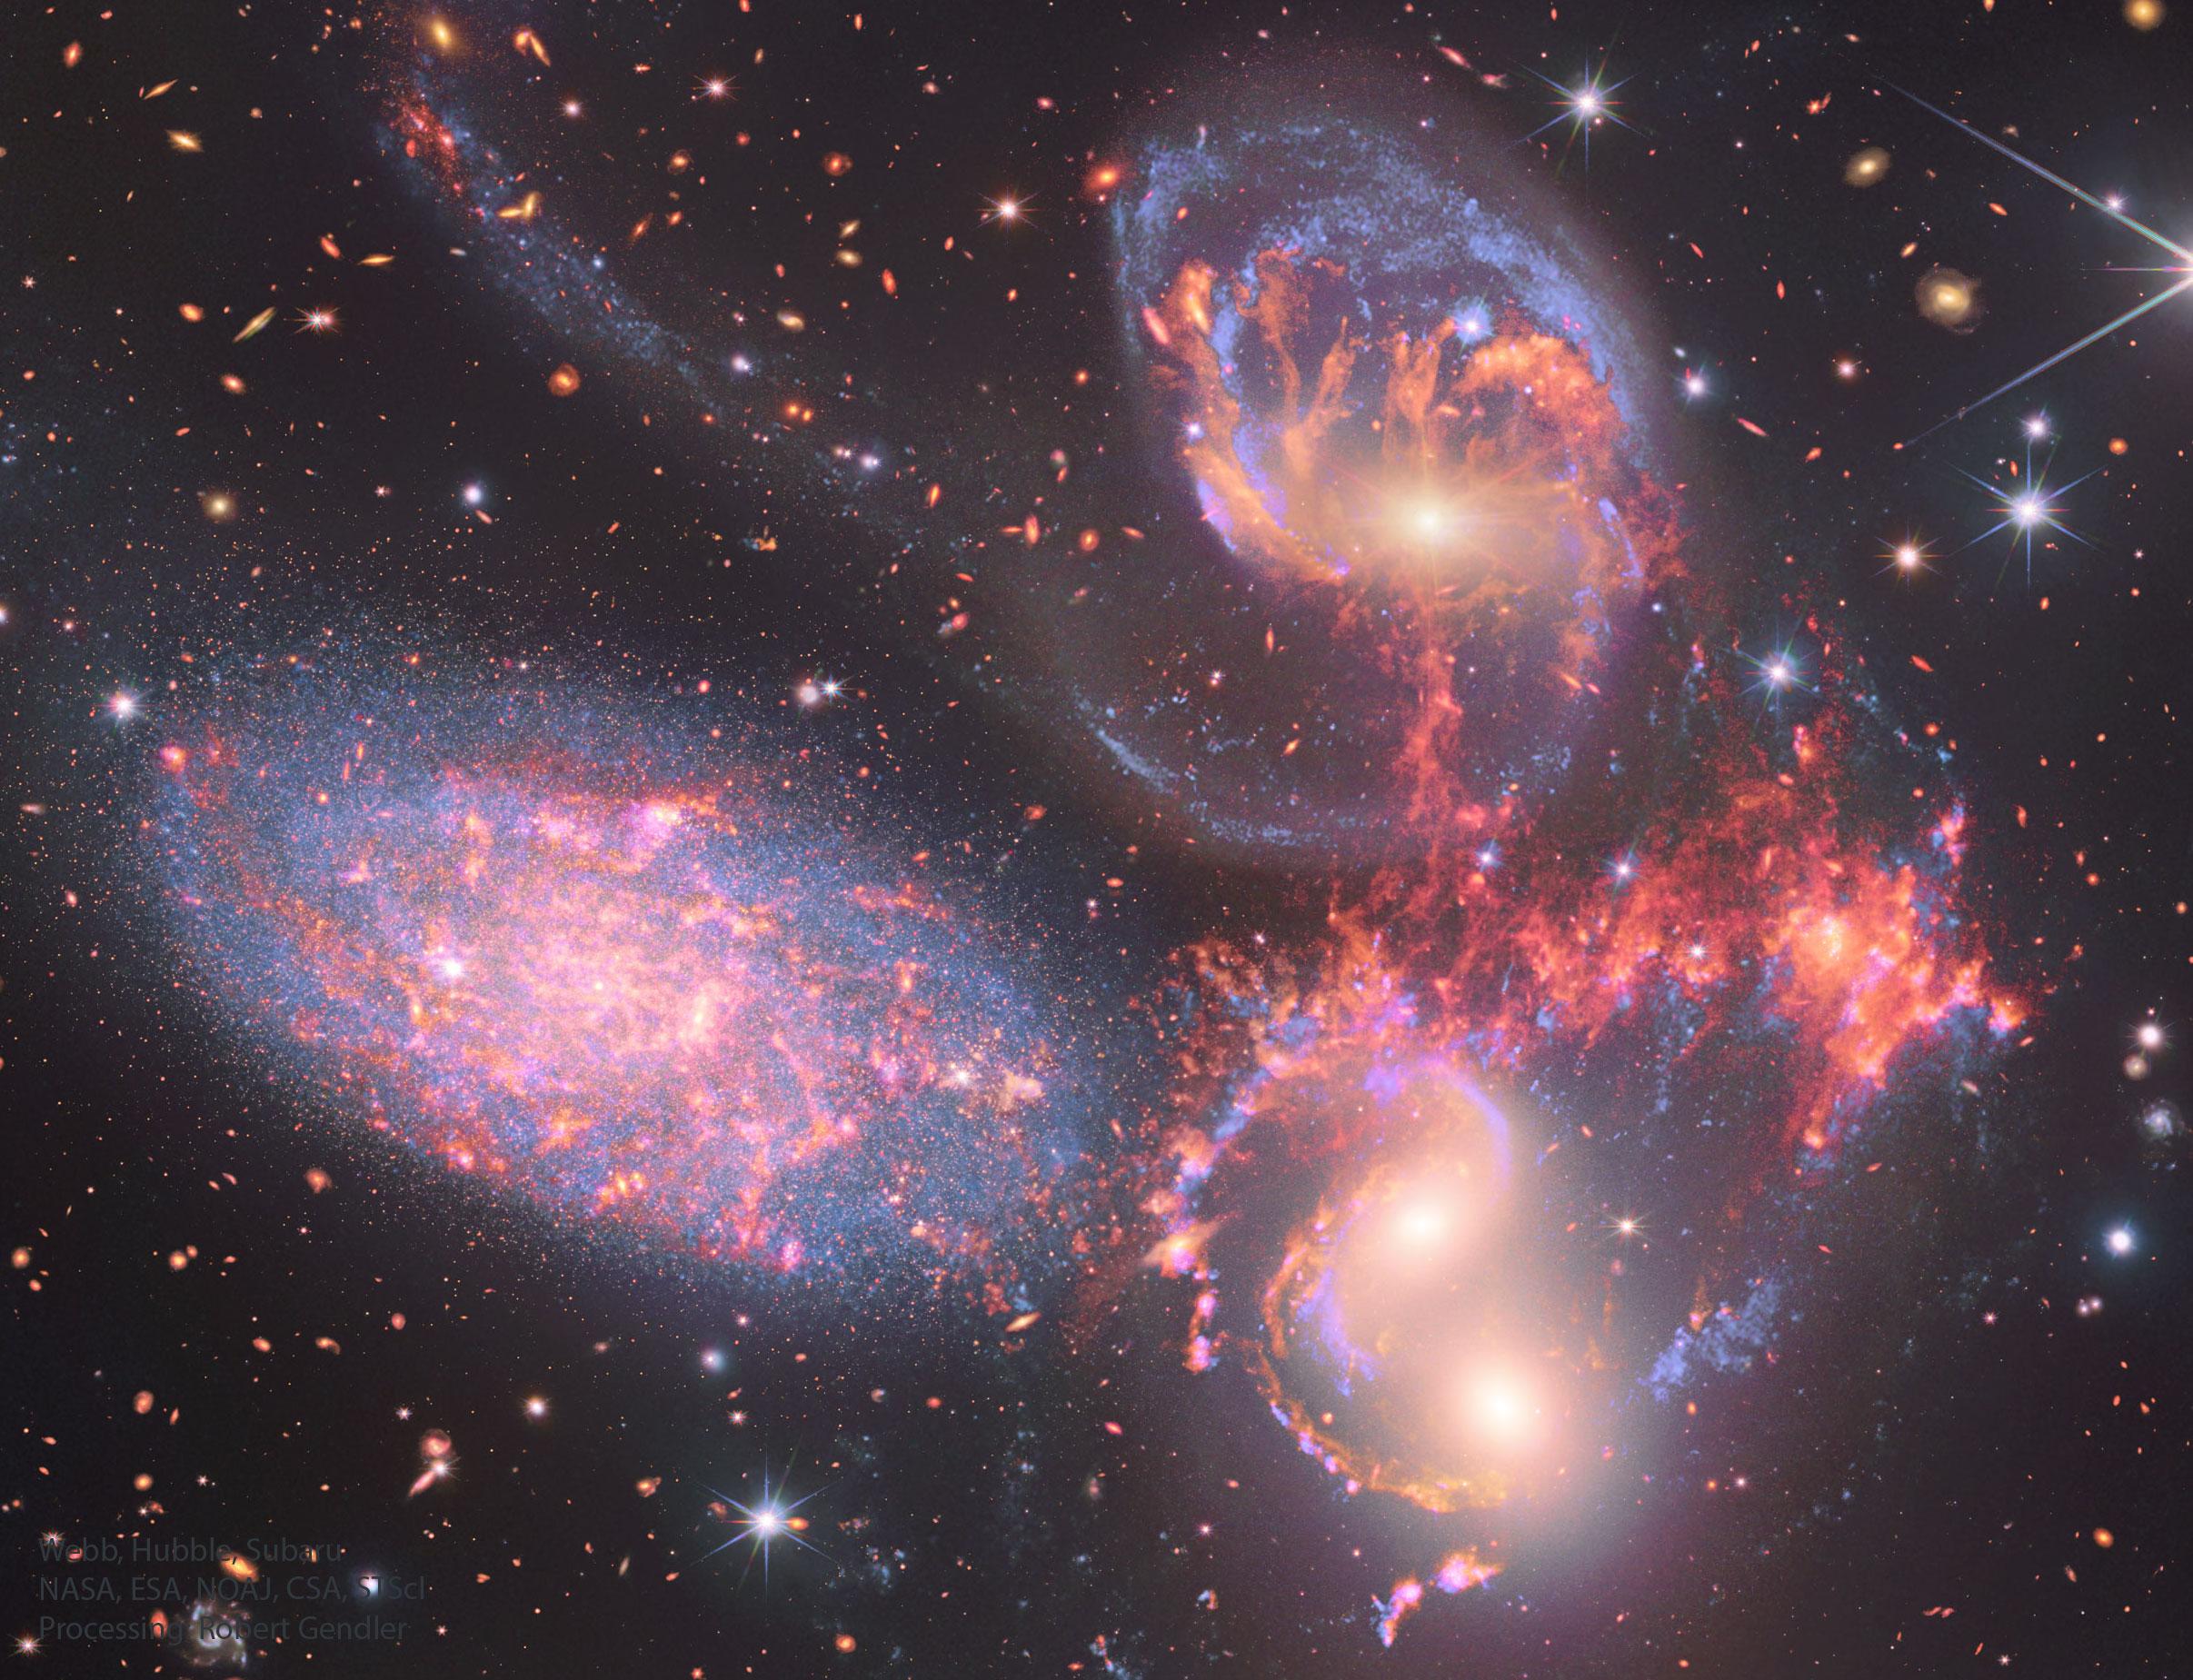 بضع مجرّات متفاعلة بألوان عدّة، وخلفها مجرّات أبعد وأمامها نجوم المقدّمة